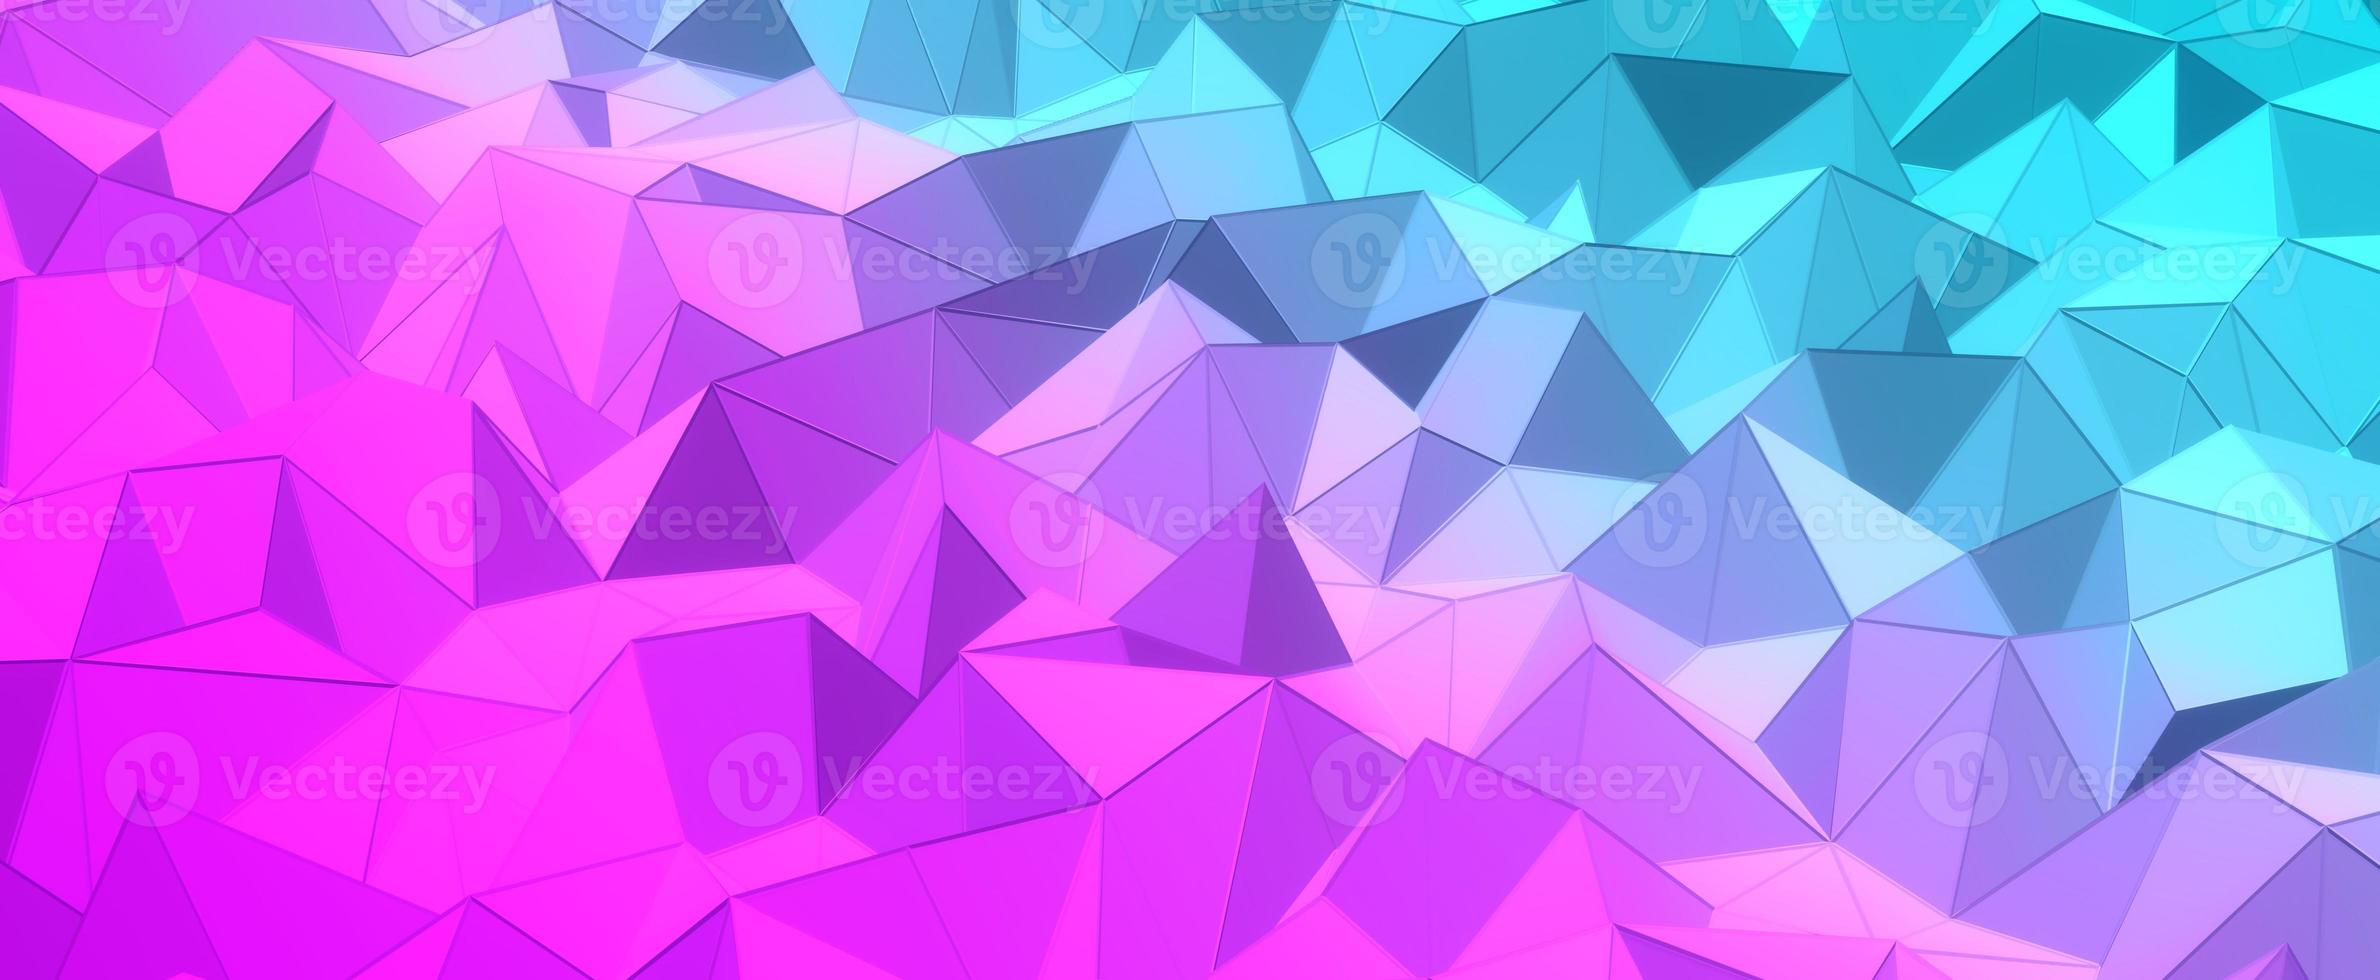 abstrato de cristal azul roxo. colinas de mosaico geométrico com malha de renderização 3d. texturas digitais triangulares empilhadas em formações criativas com interior futurista foto